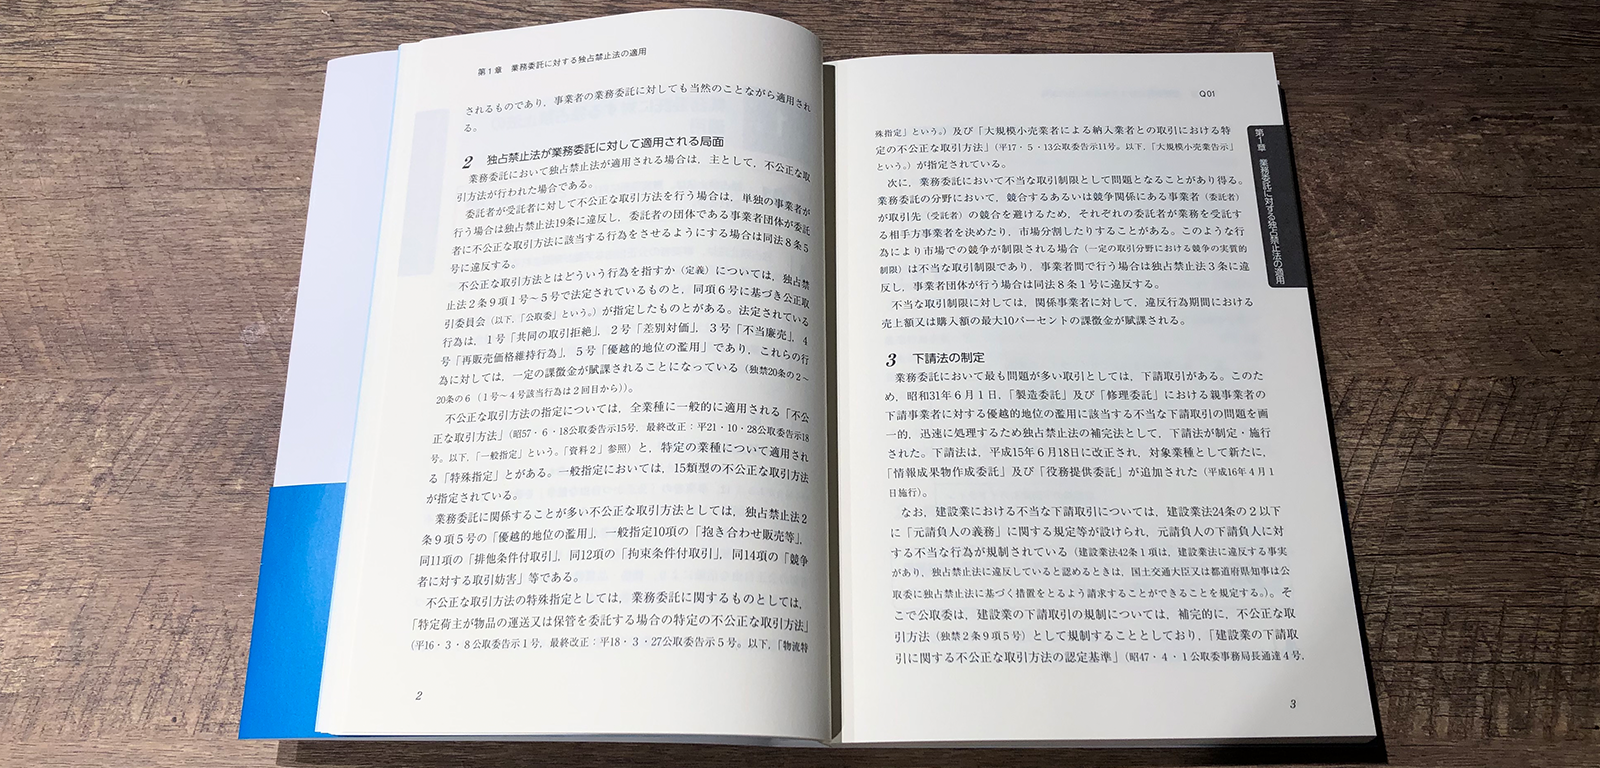 波光巖・横田直和『Q&A 業務委託・企業間取引における法律と実務』P2-3